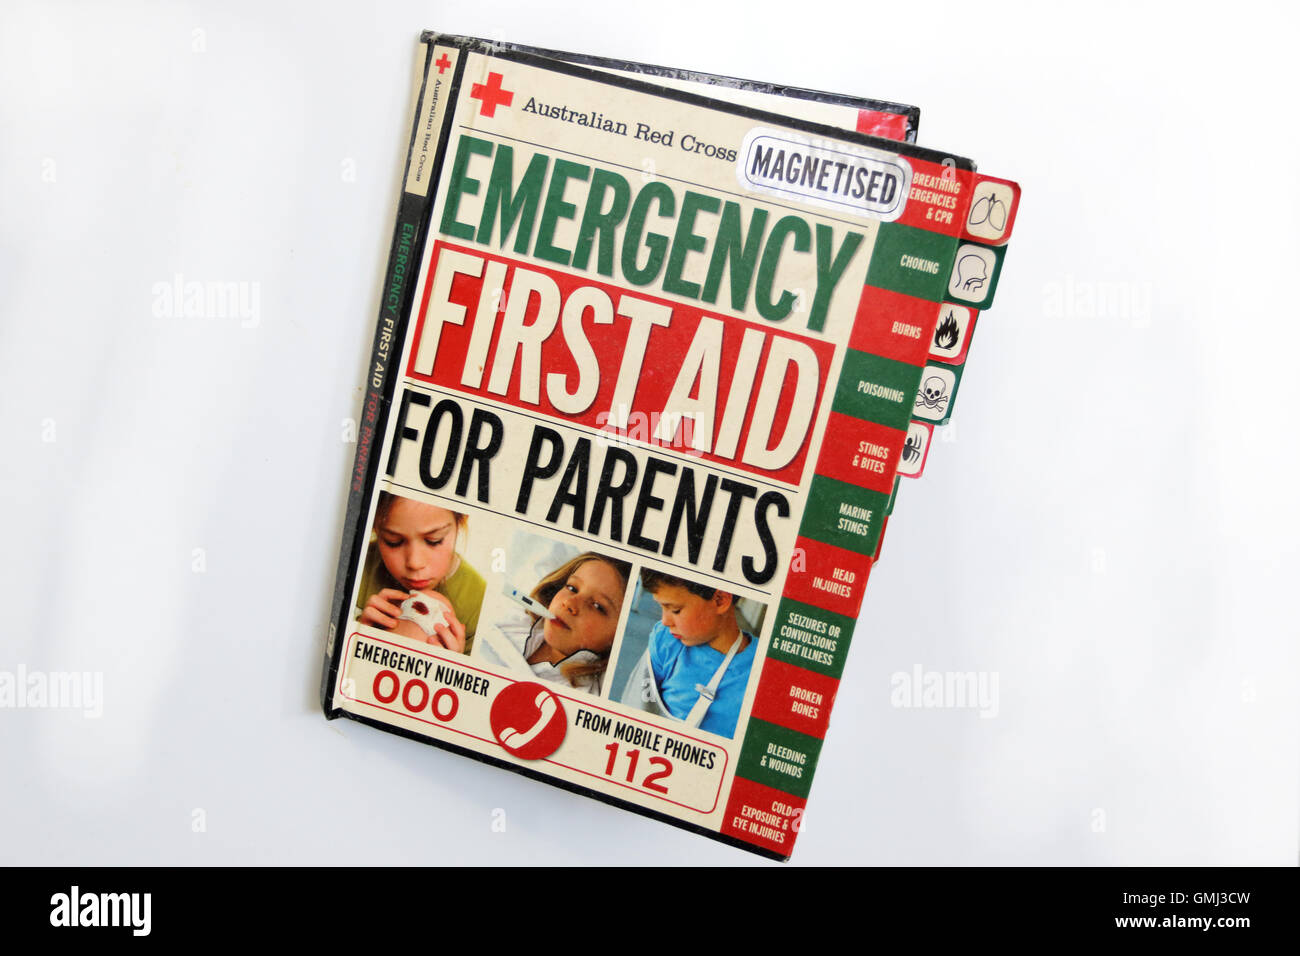 Libro de primeros auxilios para padres sobre la puerta del frigorífico Foto de stock